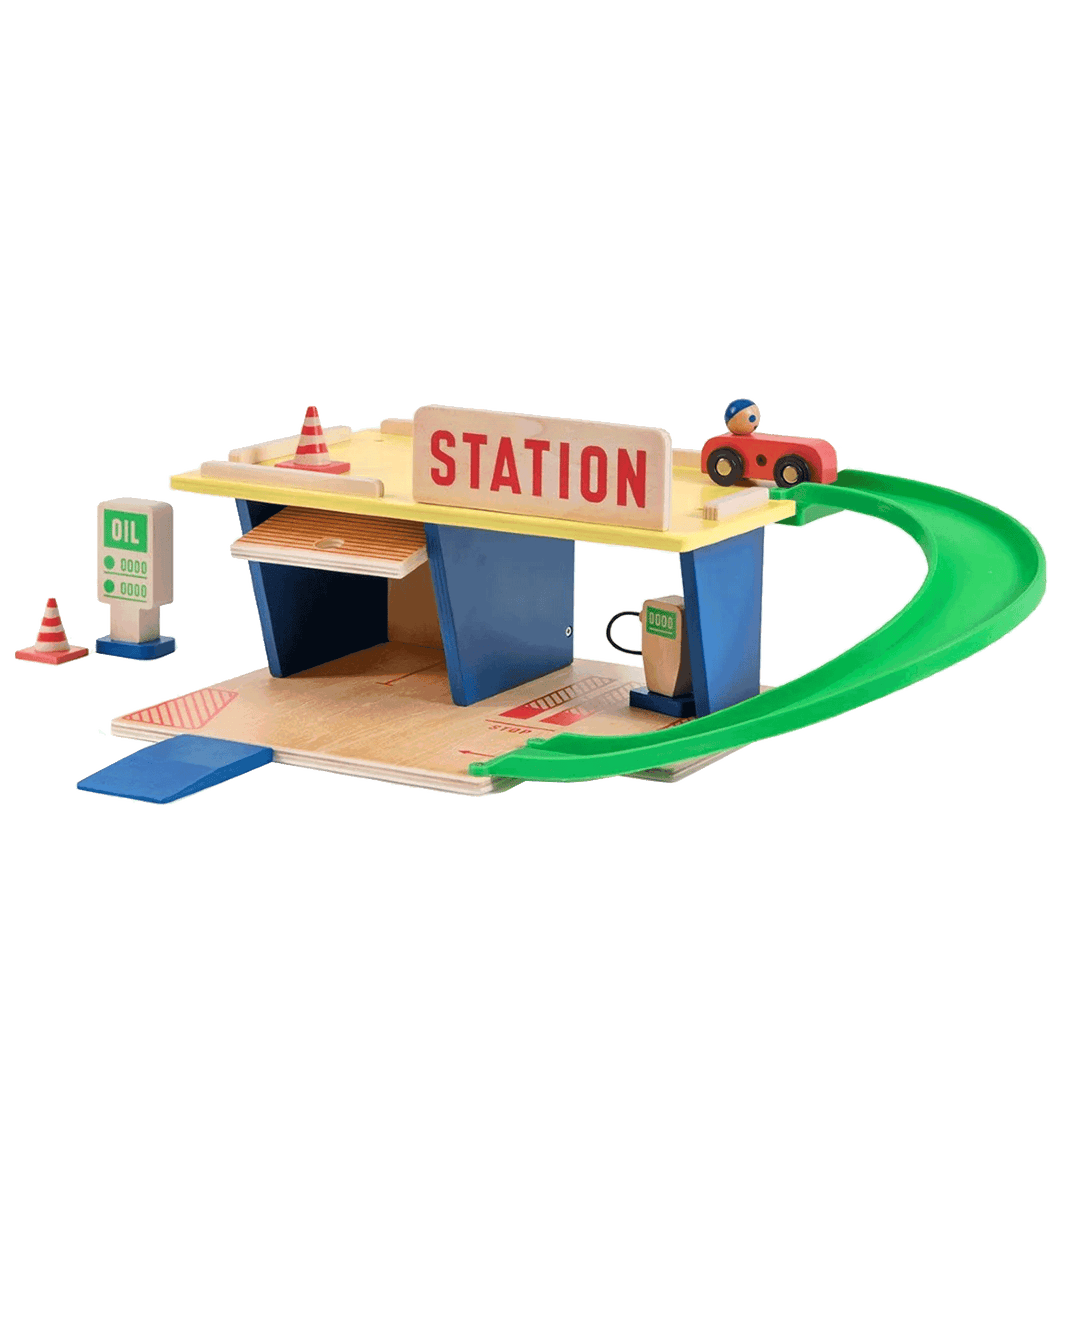 Station service - moulin roty